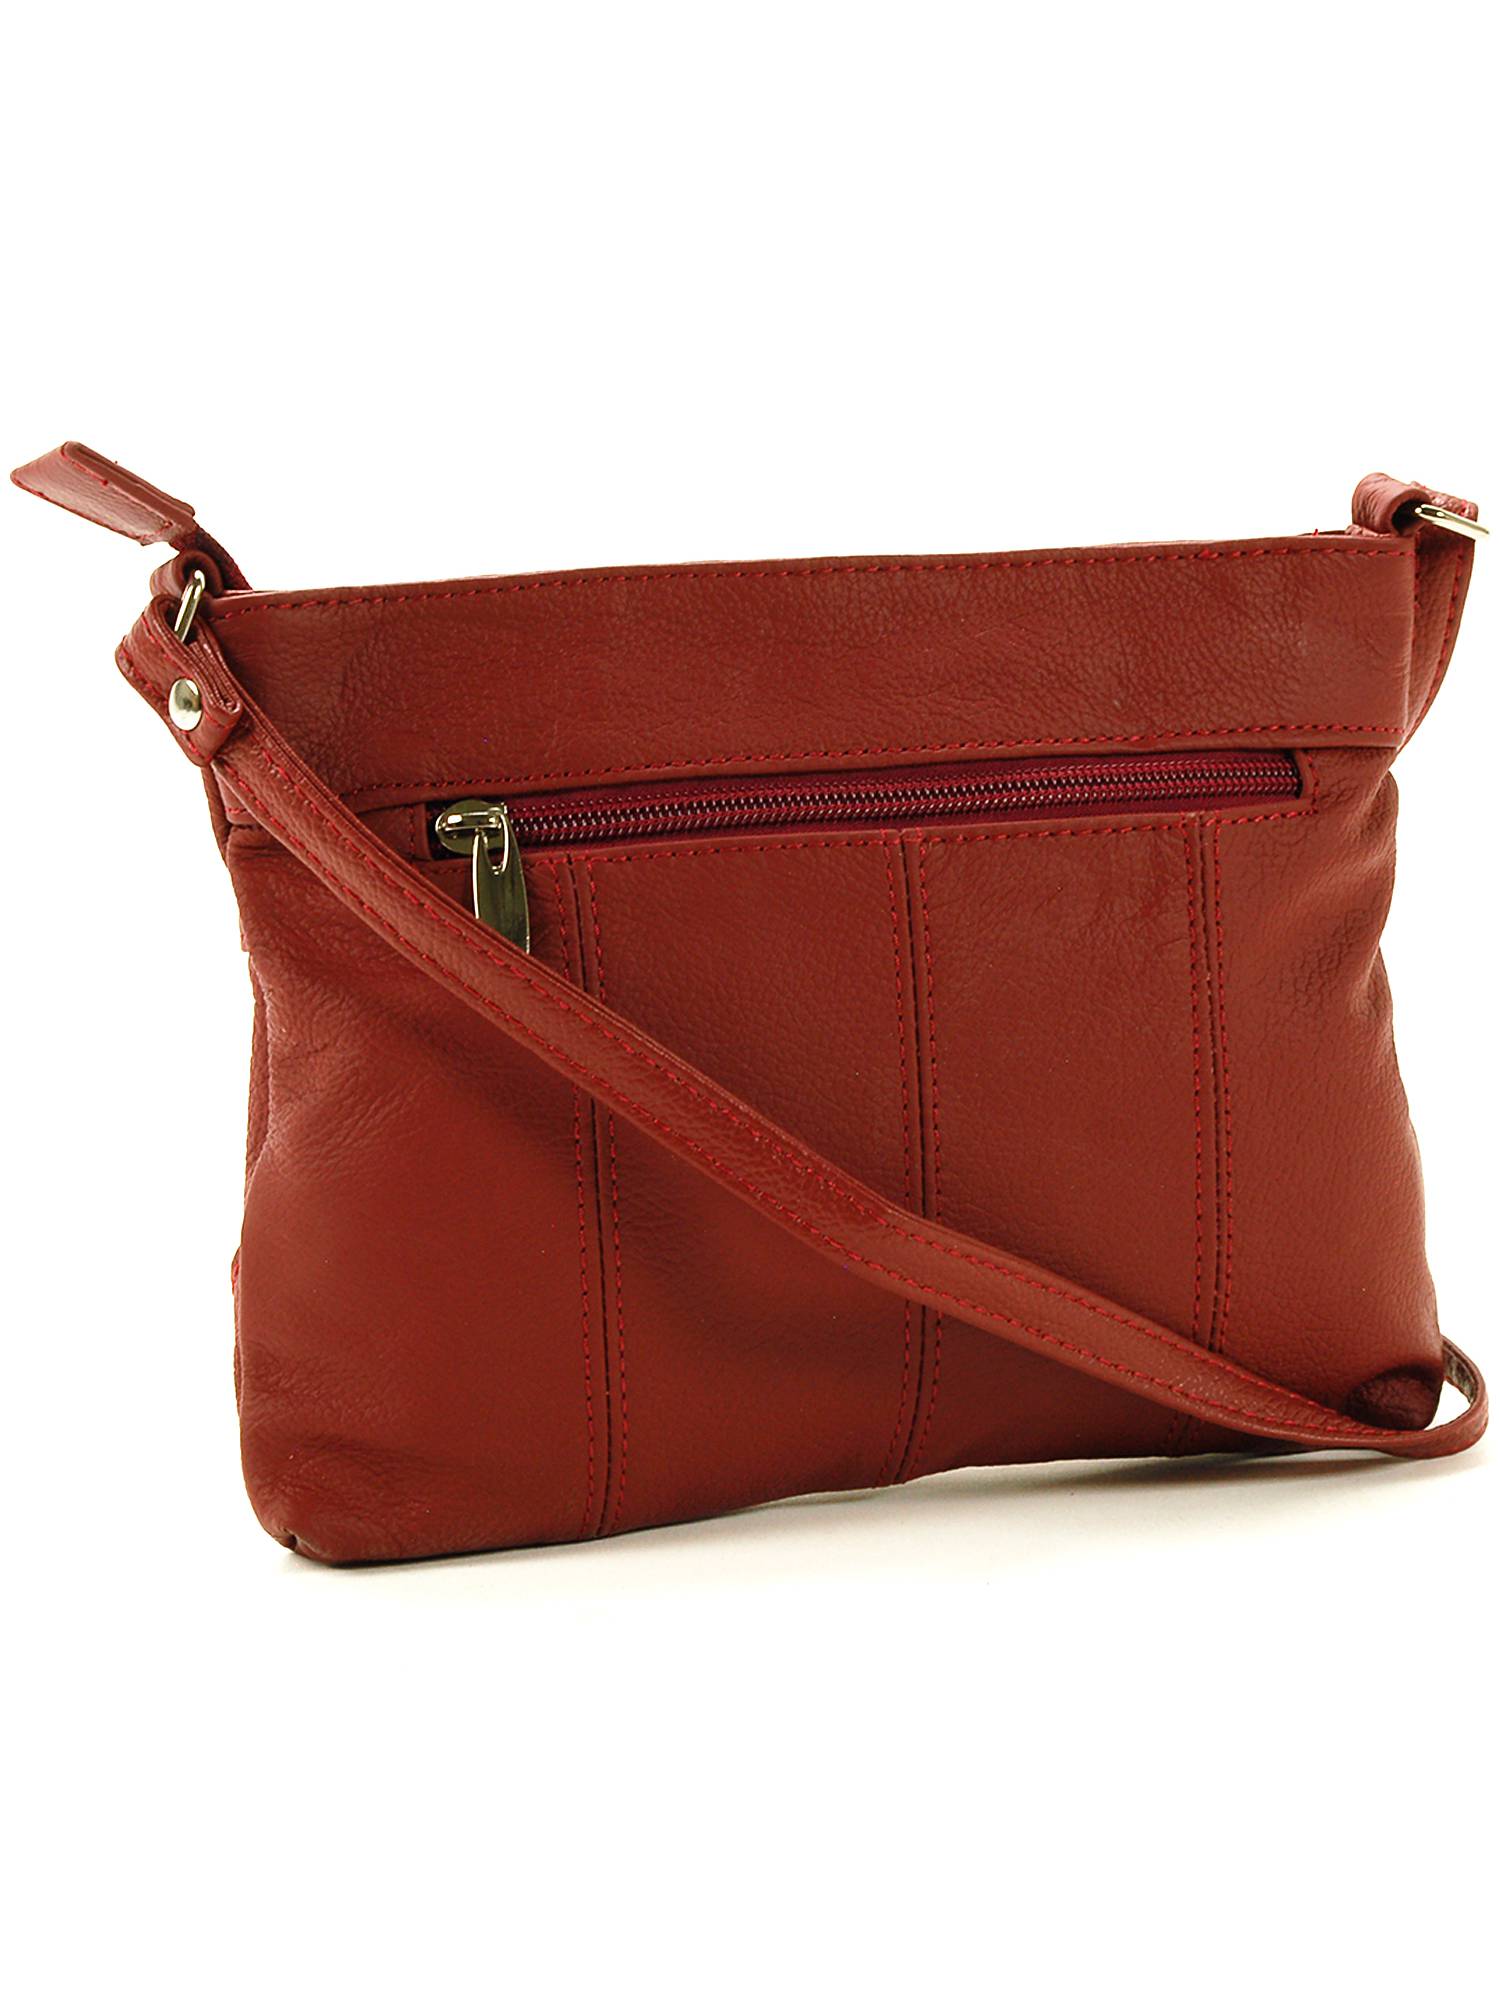 Details about  / Womens Plain Faux Leather Messenger Shoulder Handbag Ladies Two Strap Purse Bag